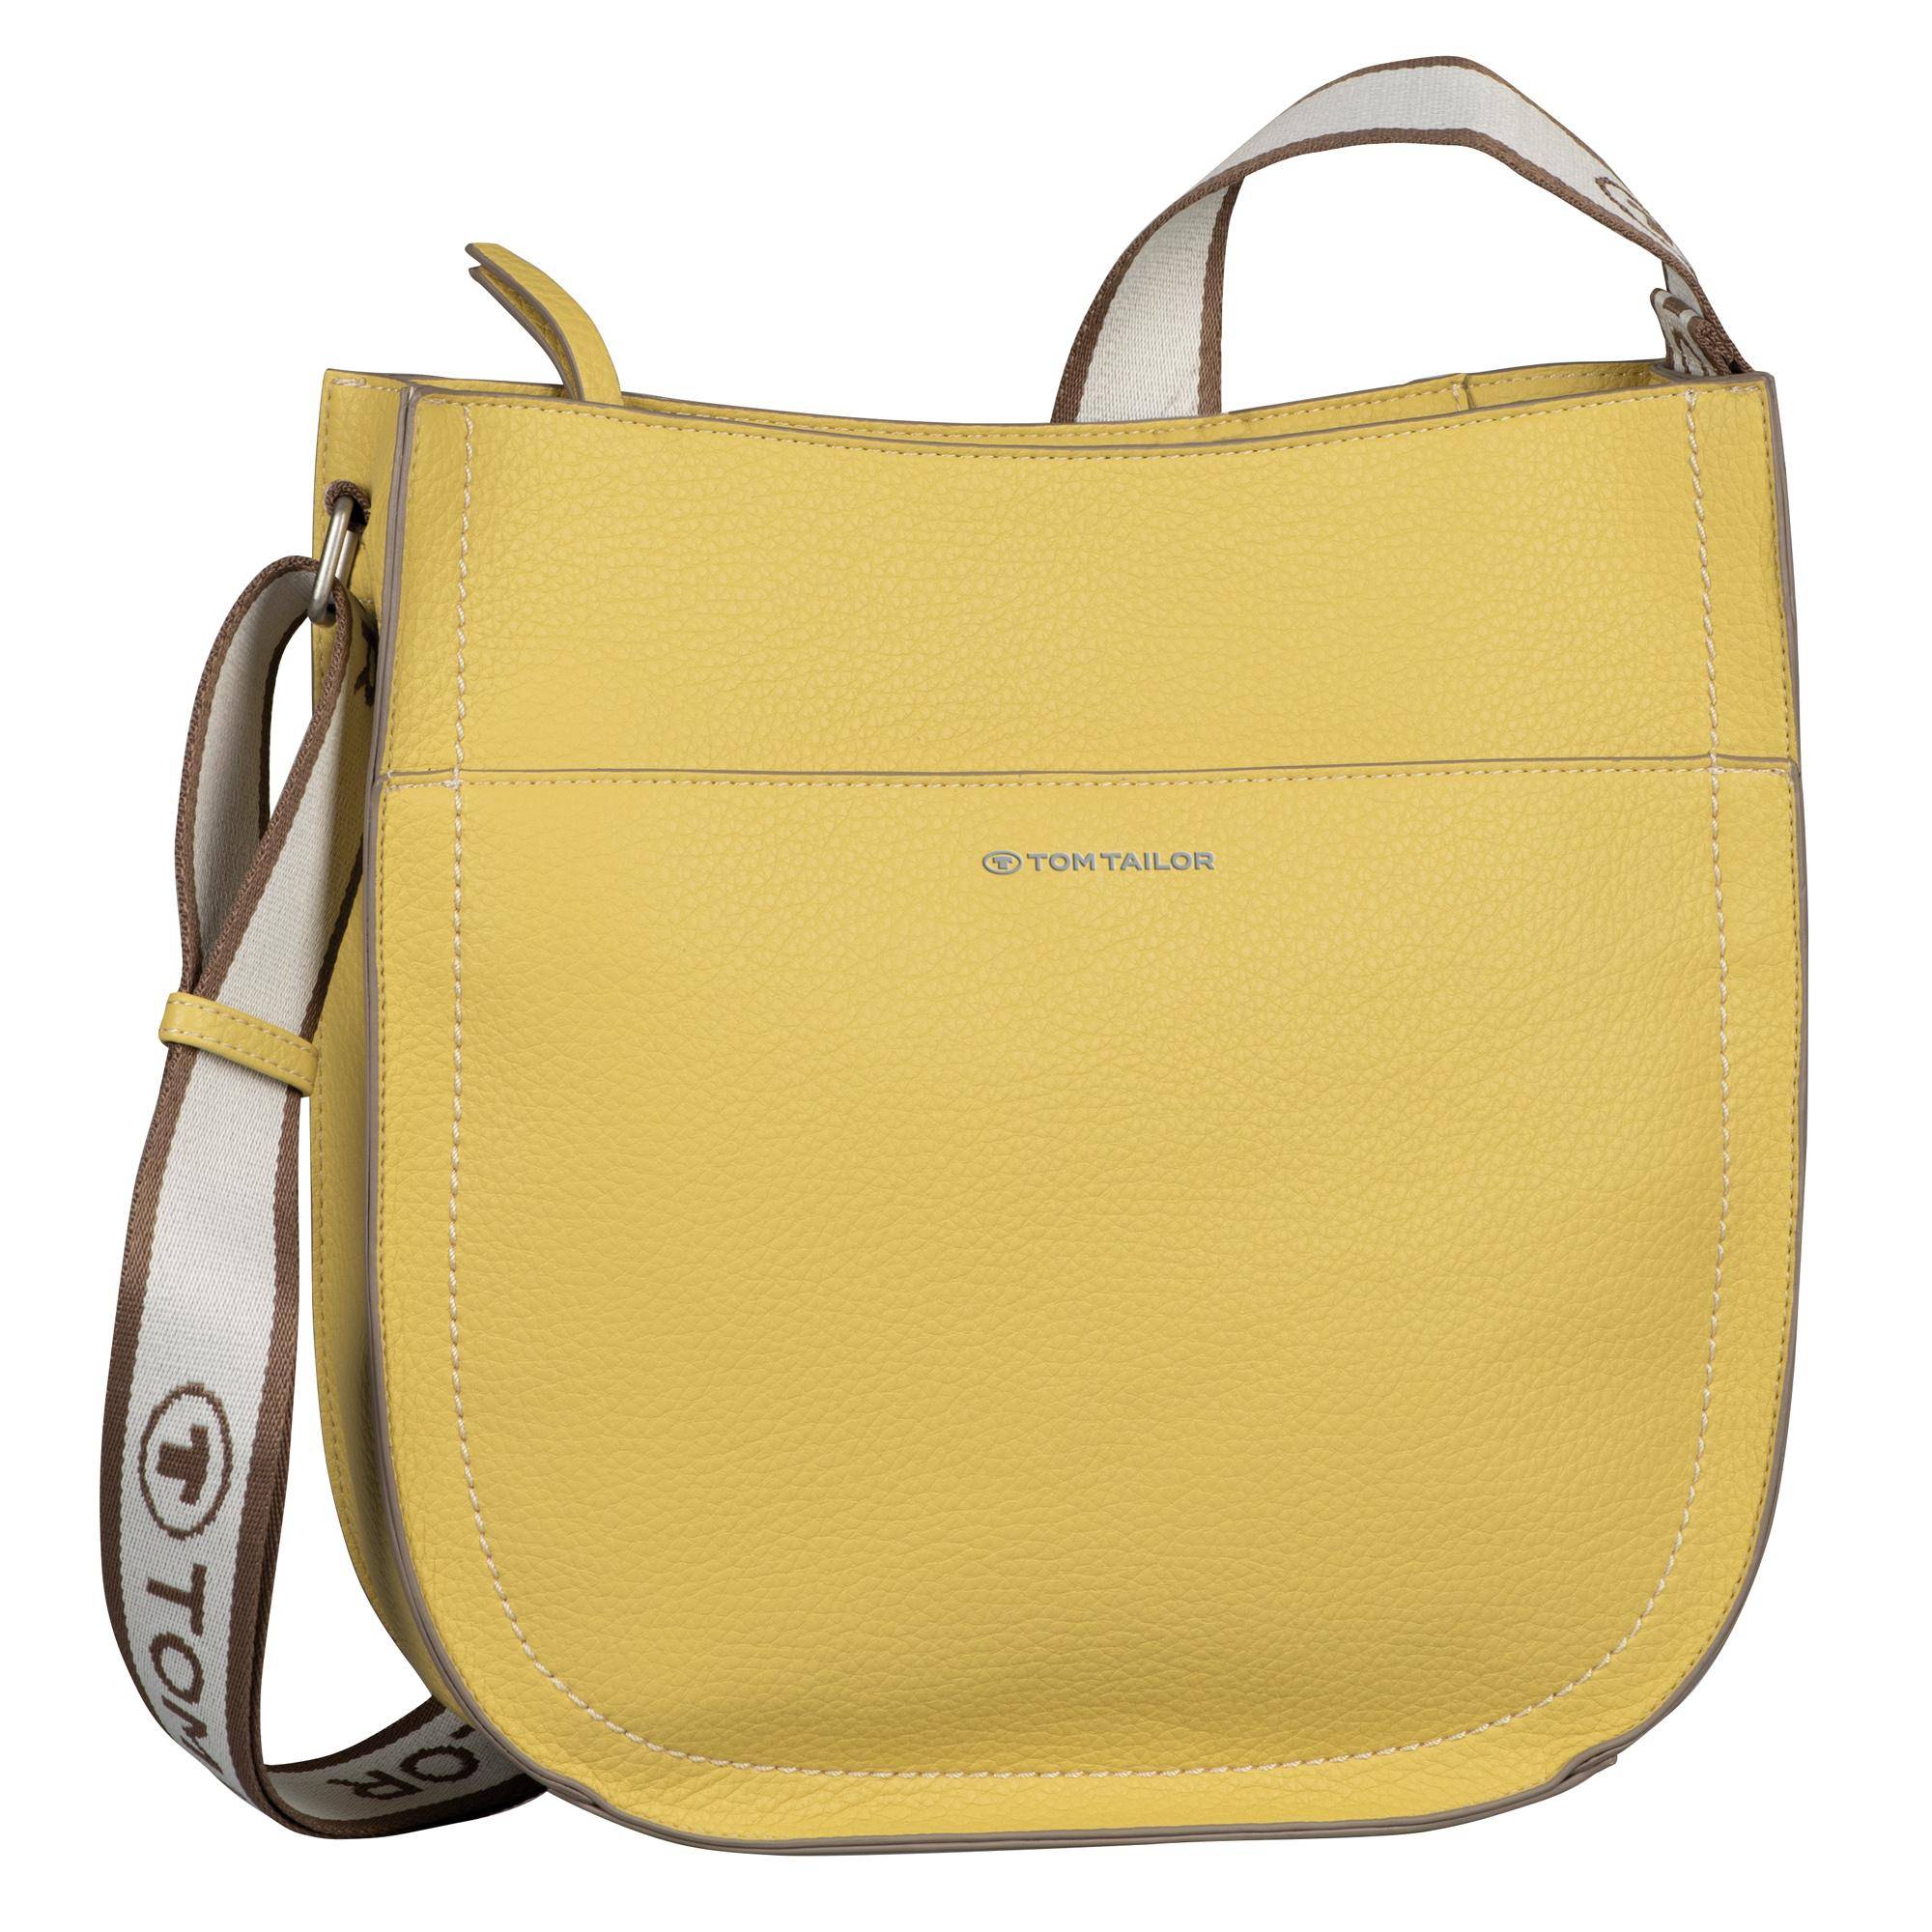 Женская сумка Tom Tailor Bags, желтая, цвет желтый, размер ONE SIZE